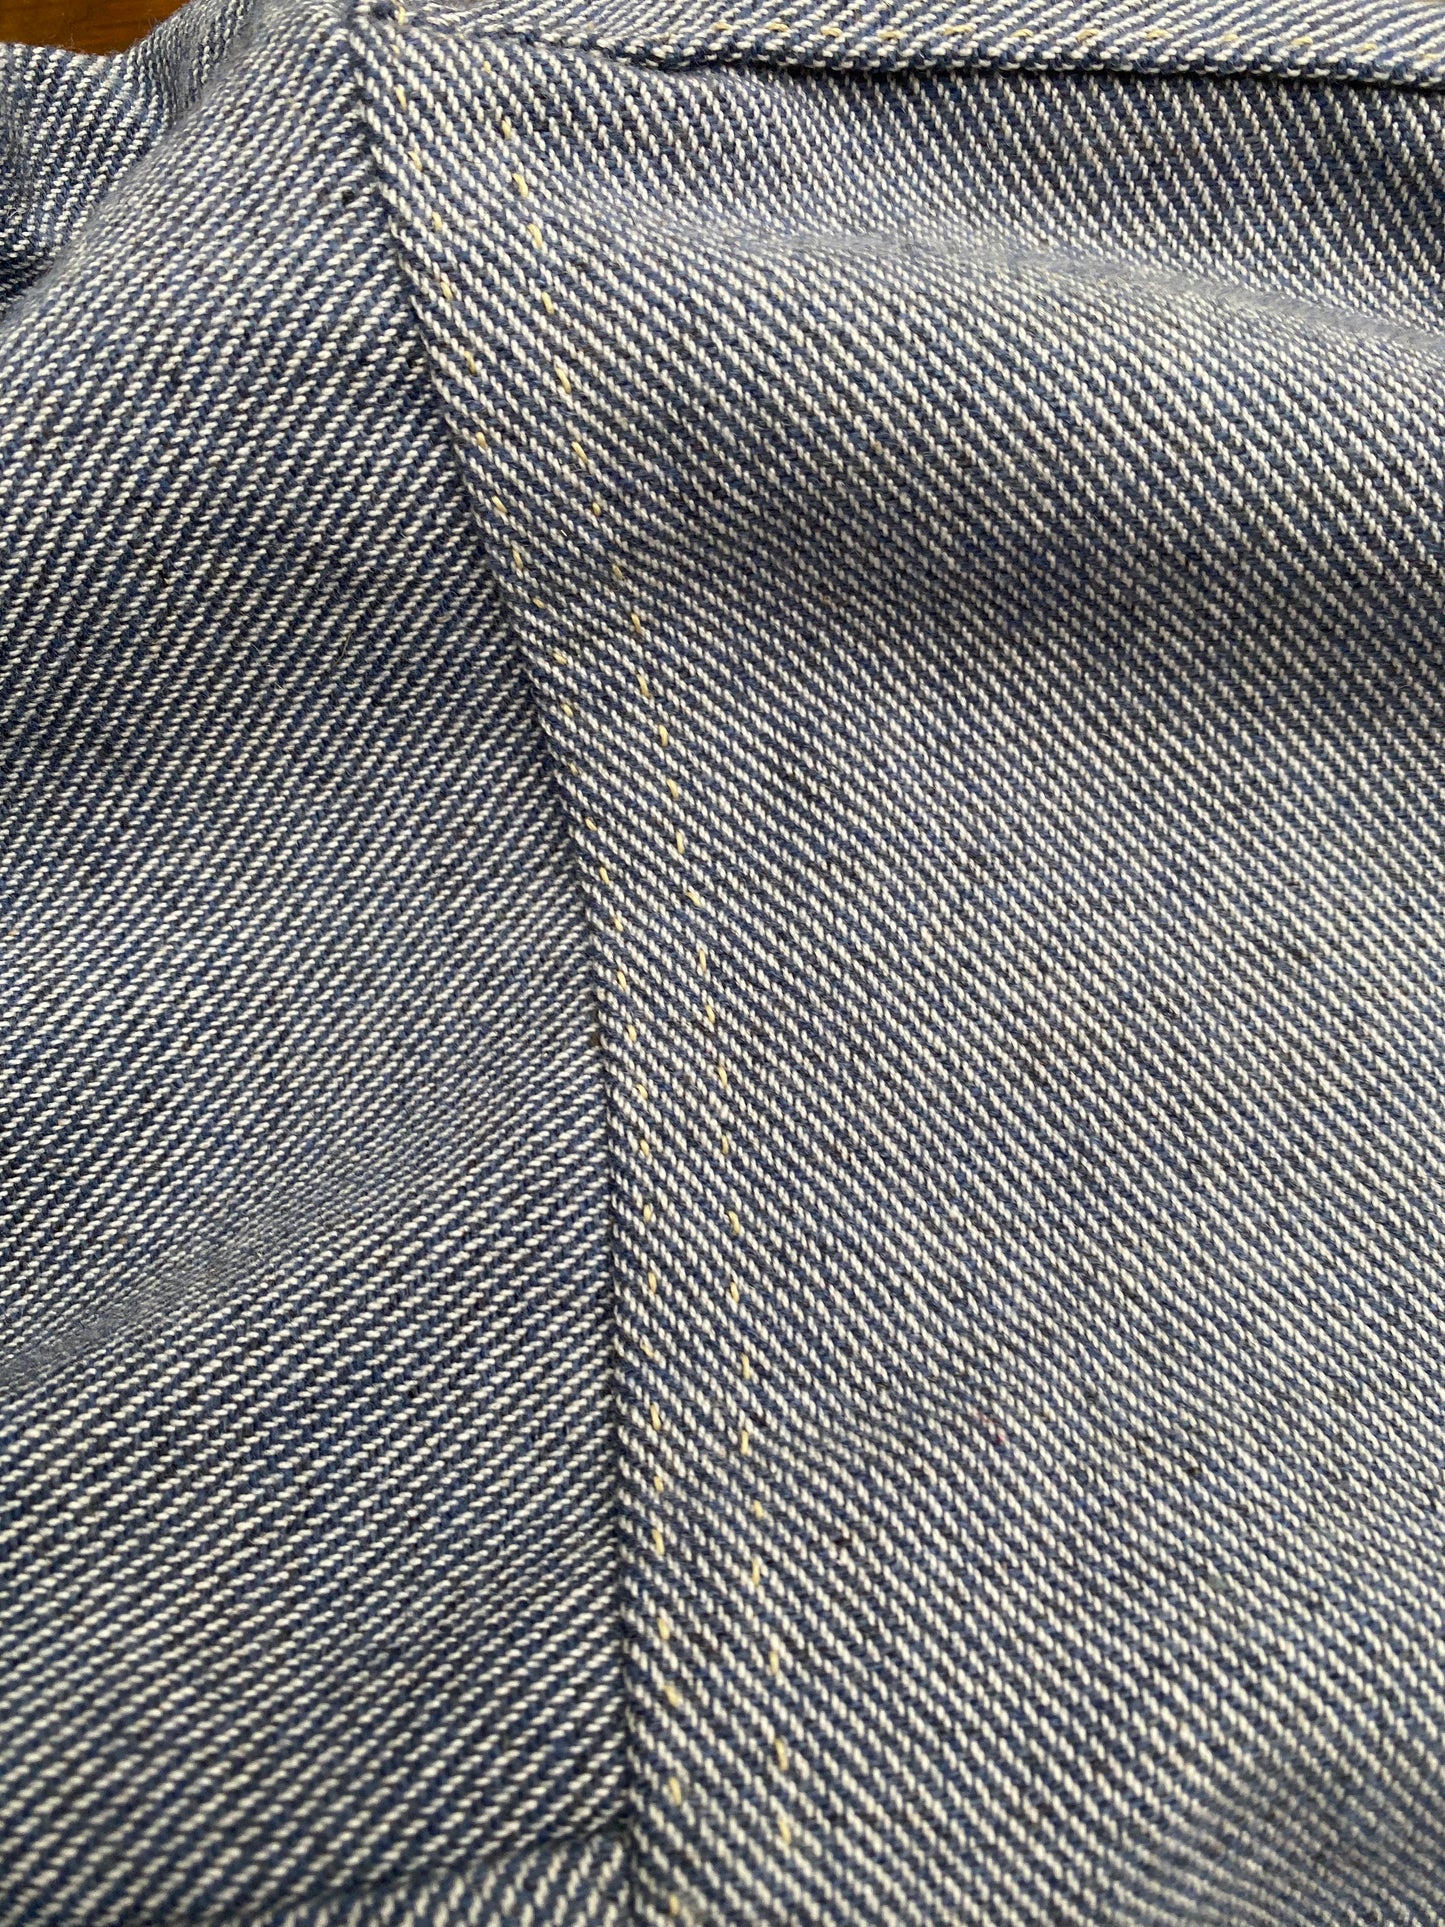 CS Issue Wool Shirt – Beauregard's Tailor